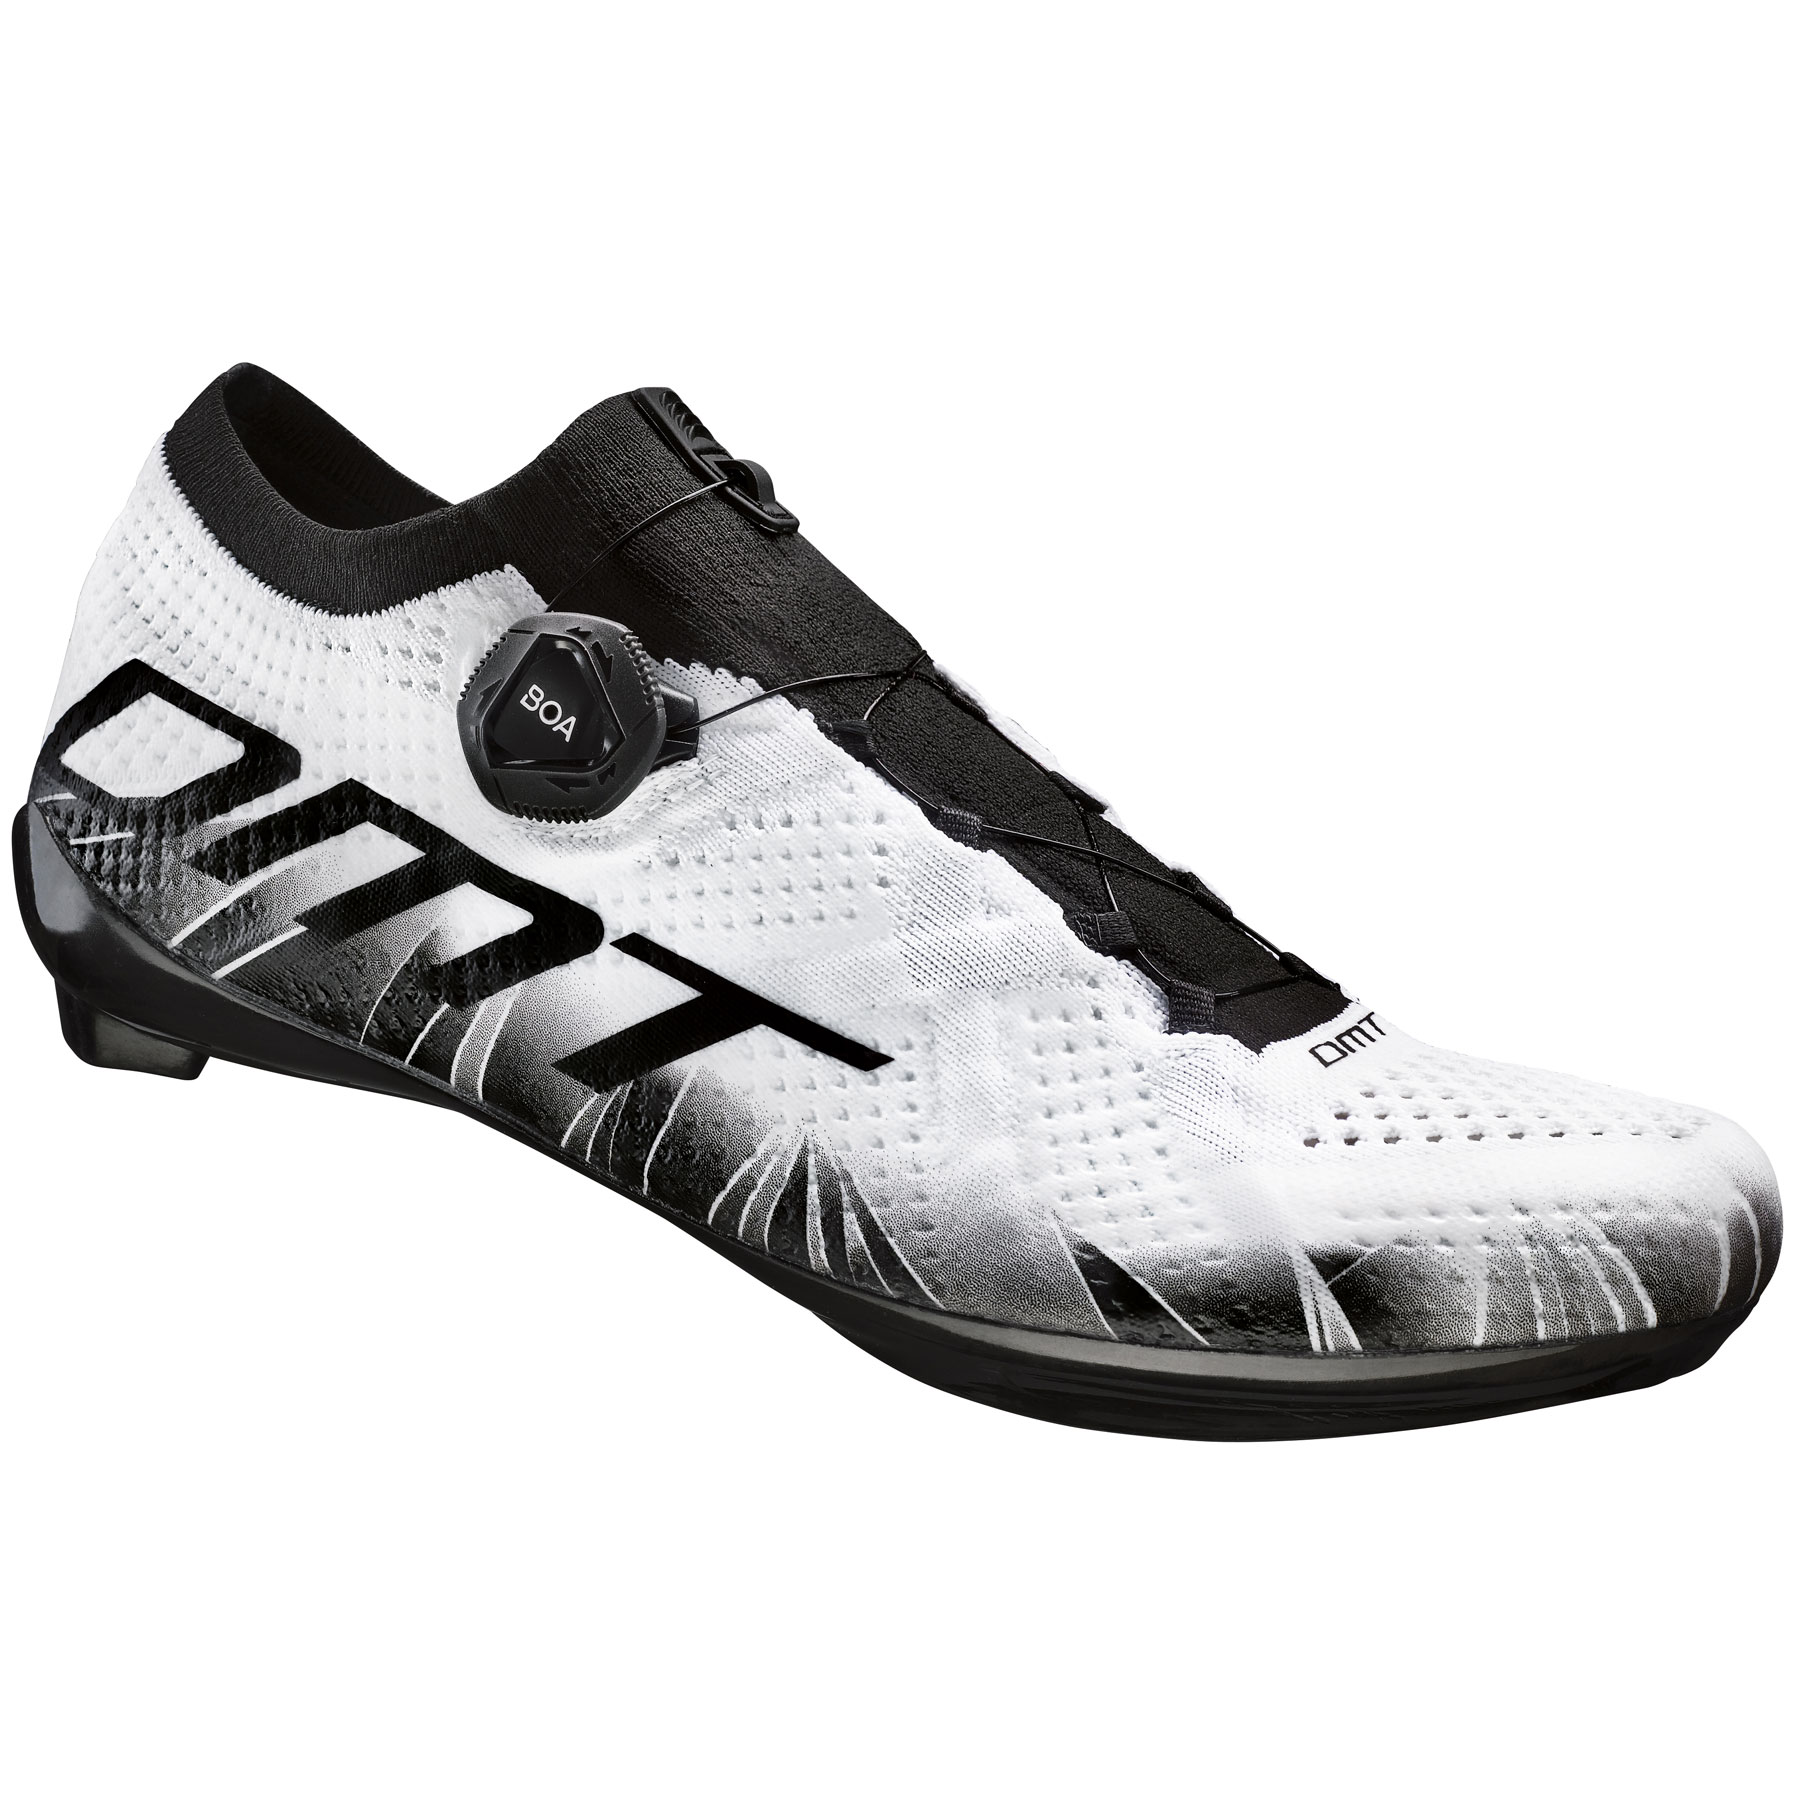 Productfoto van DMT KR1 Racefietsschoenen - wit/zwart